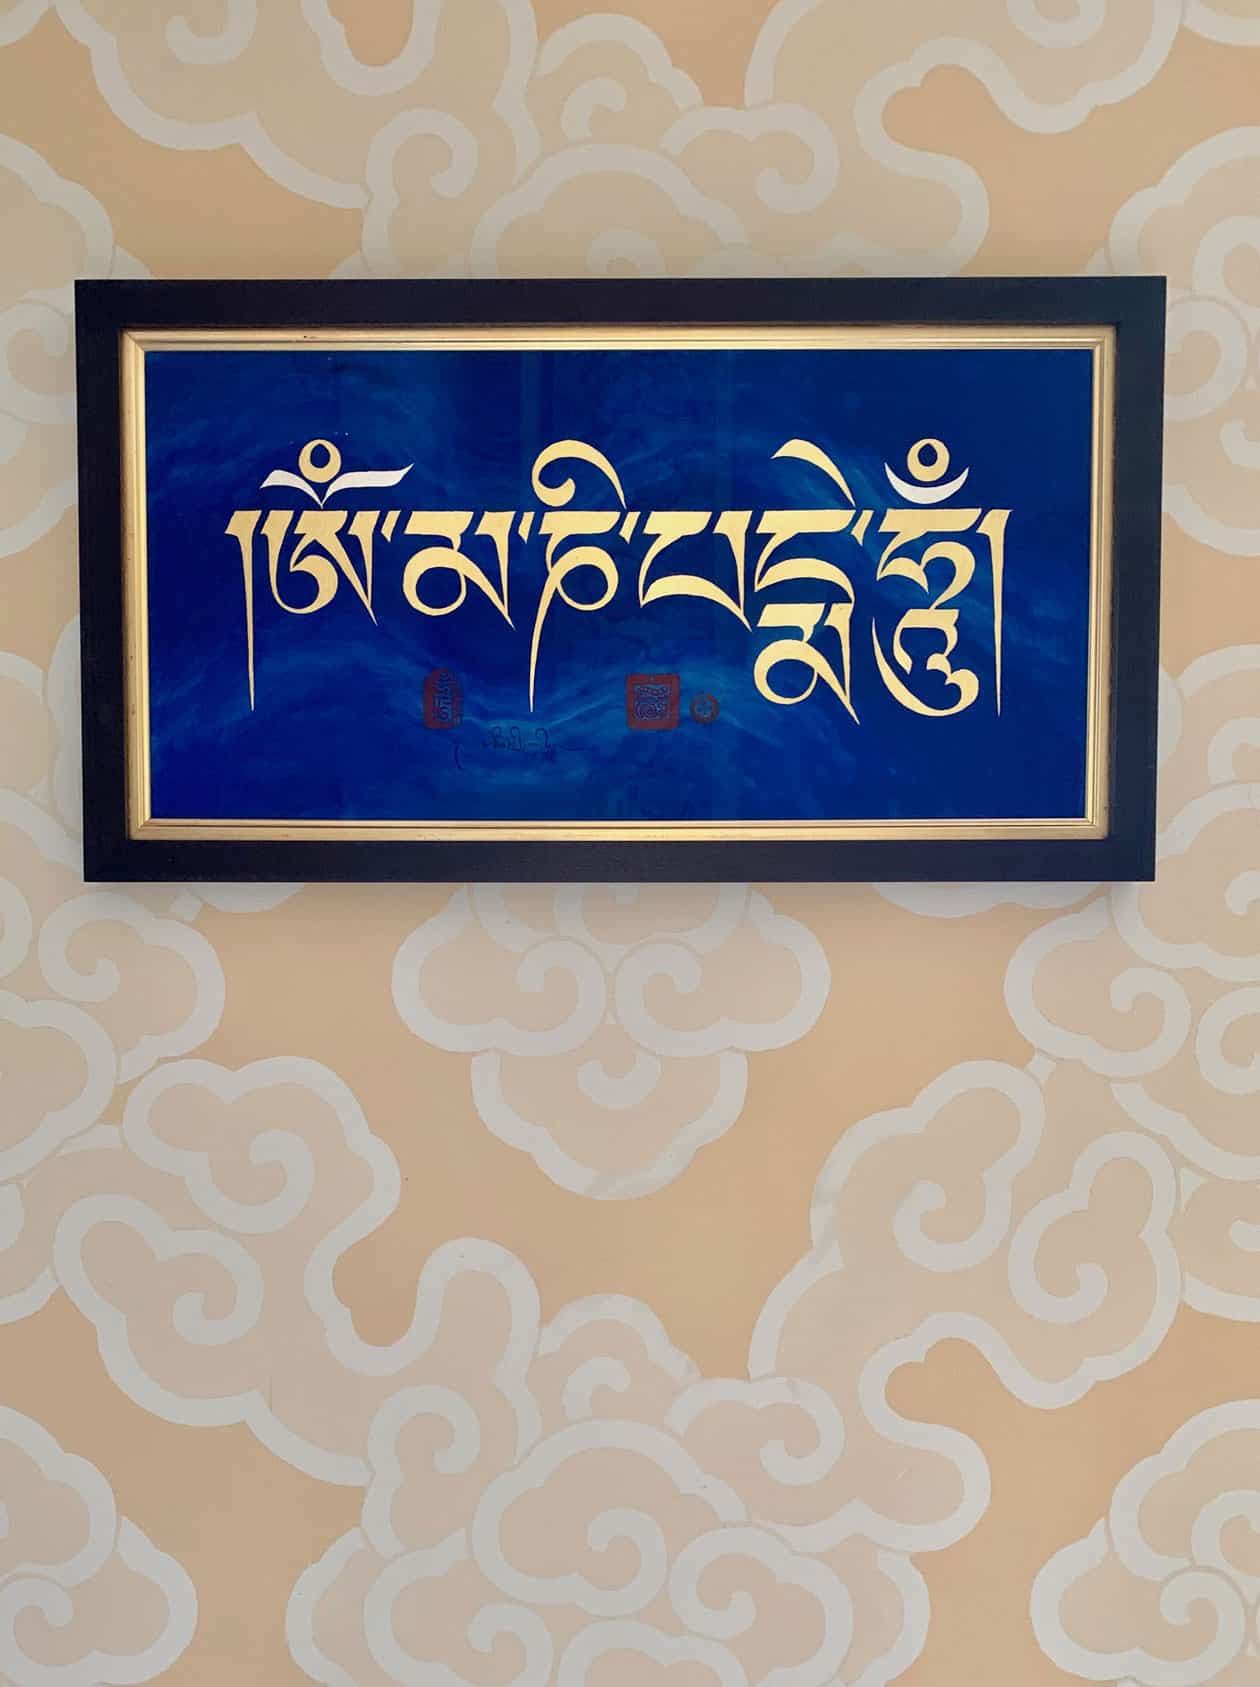 The iconic Kalachakra monogram